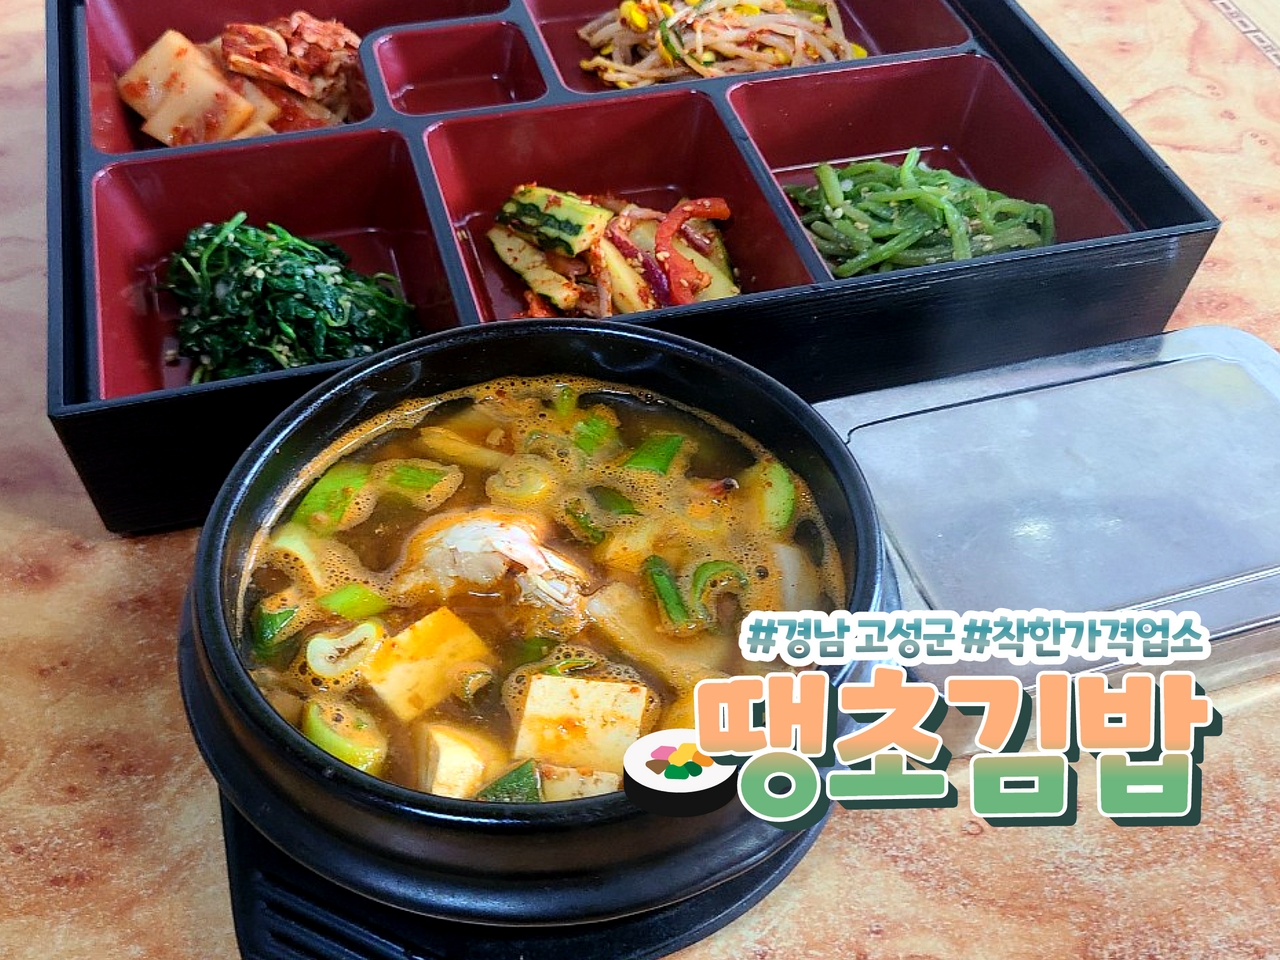 매콤한 김밥 맛집, 땡초김밥 관련자료